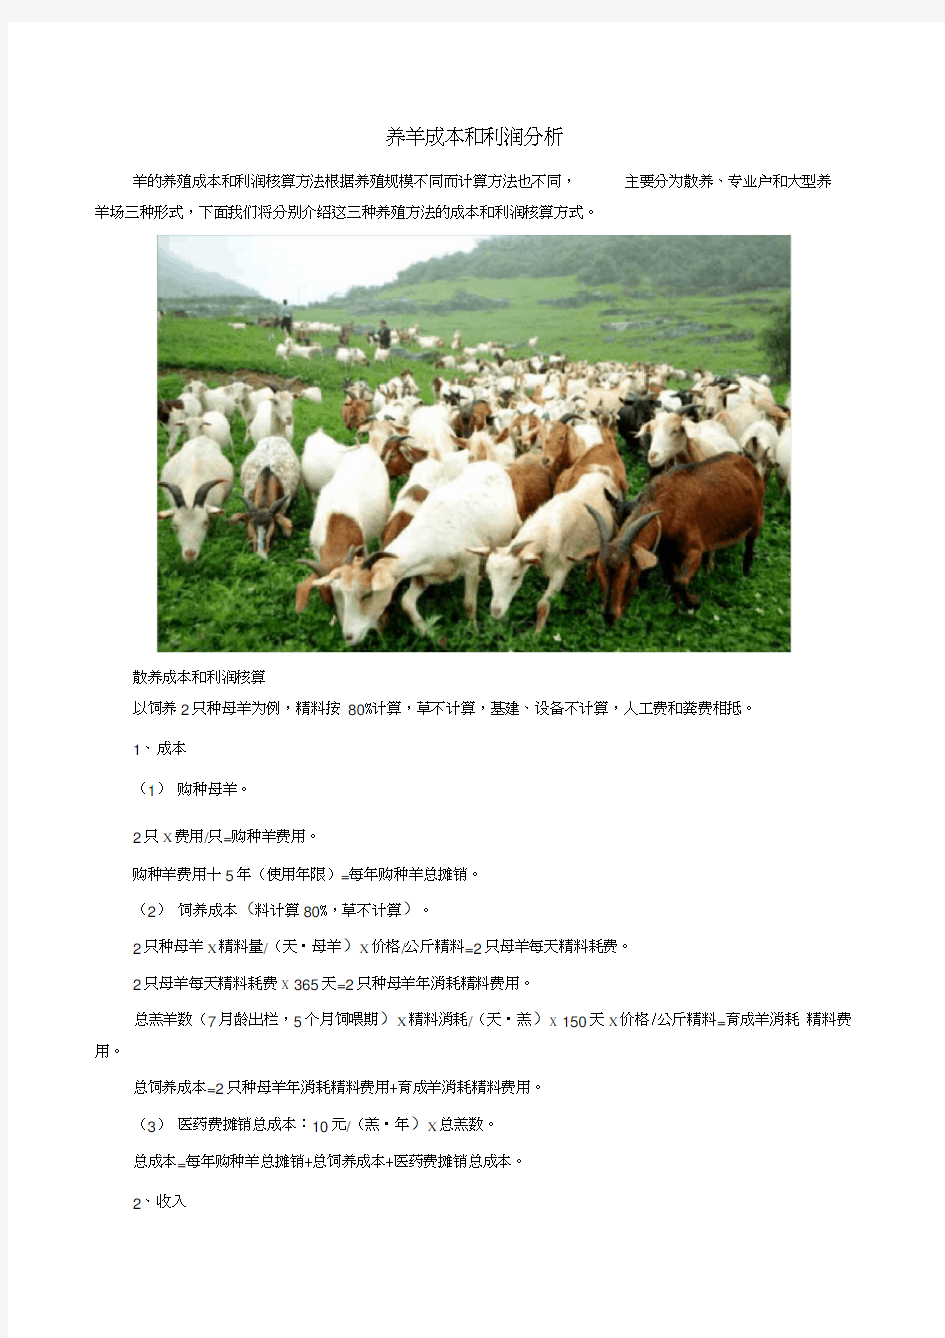 养羊成本和利润分析